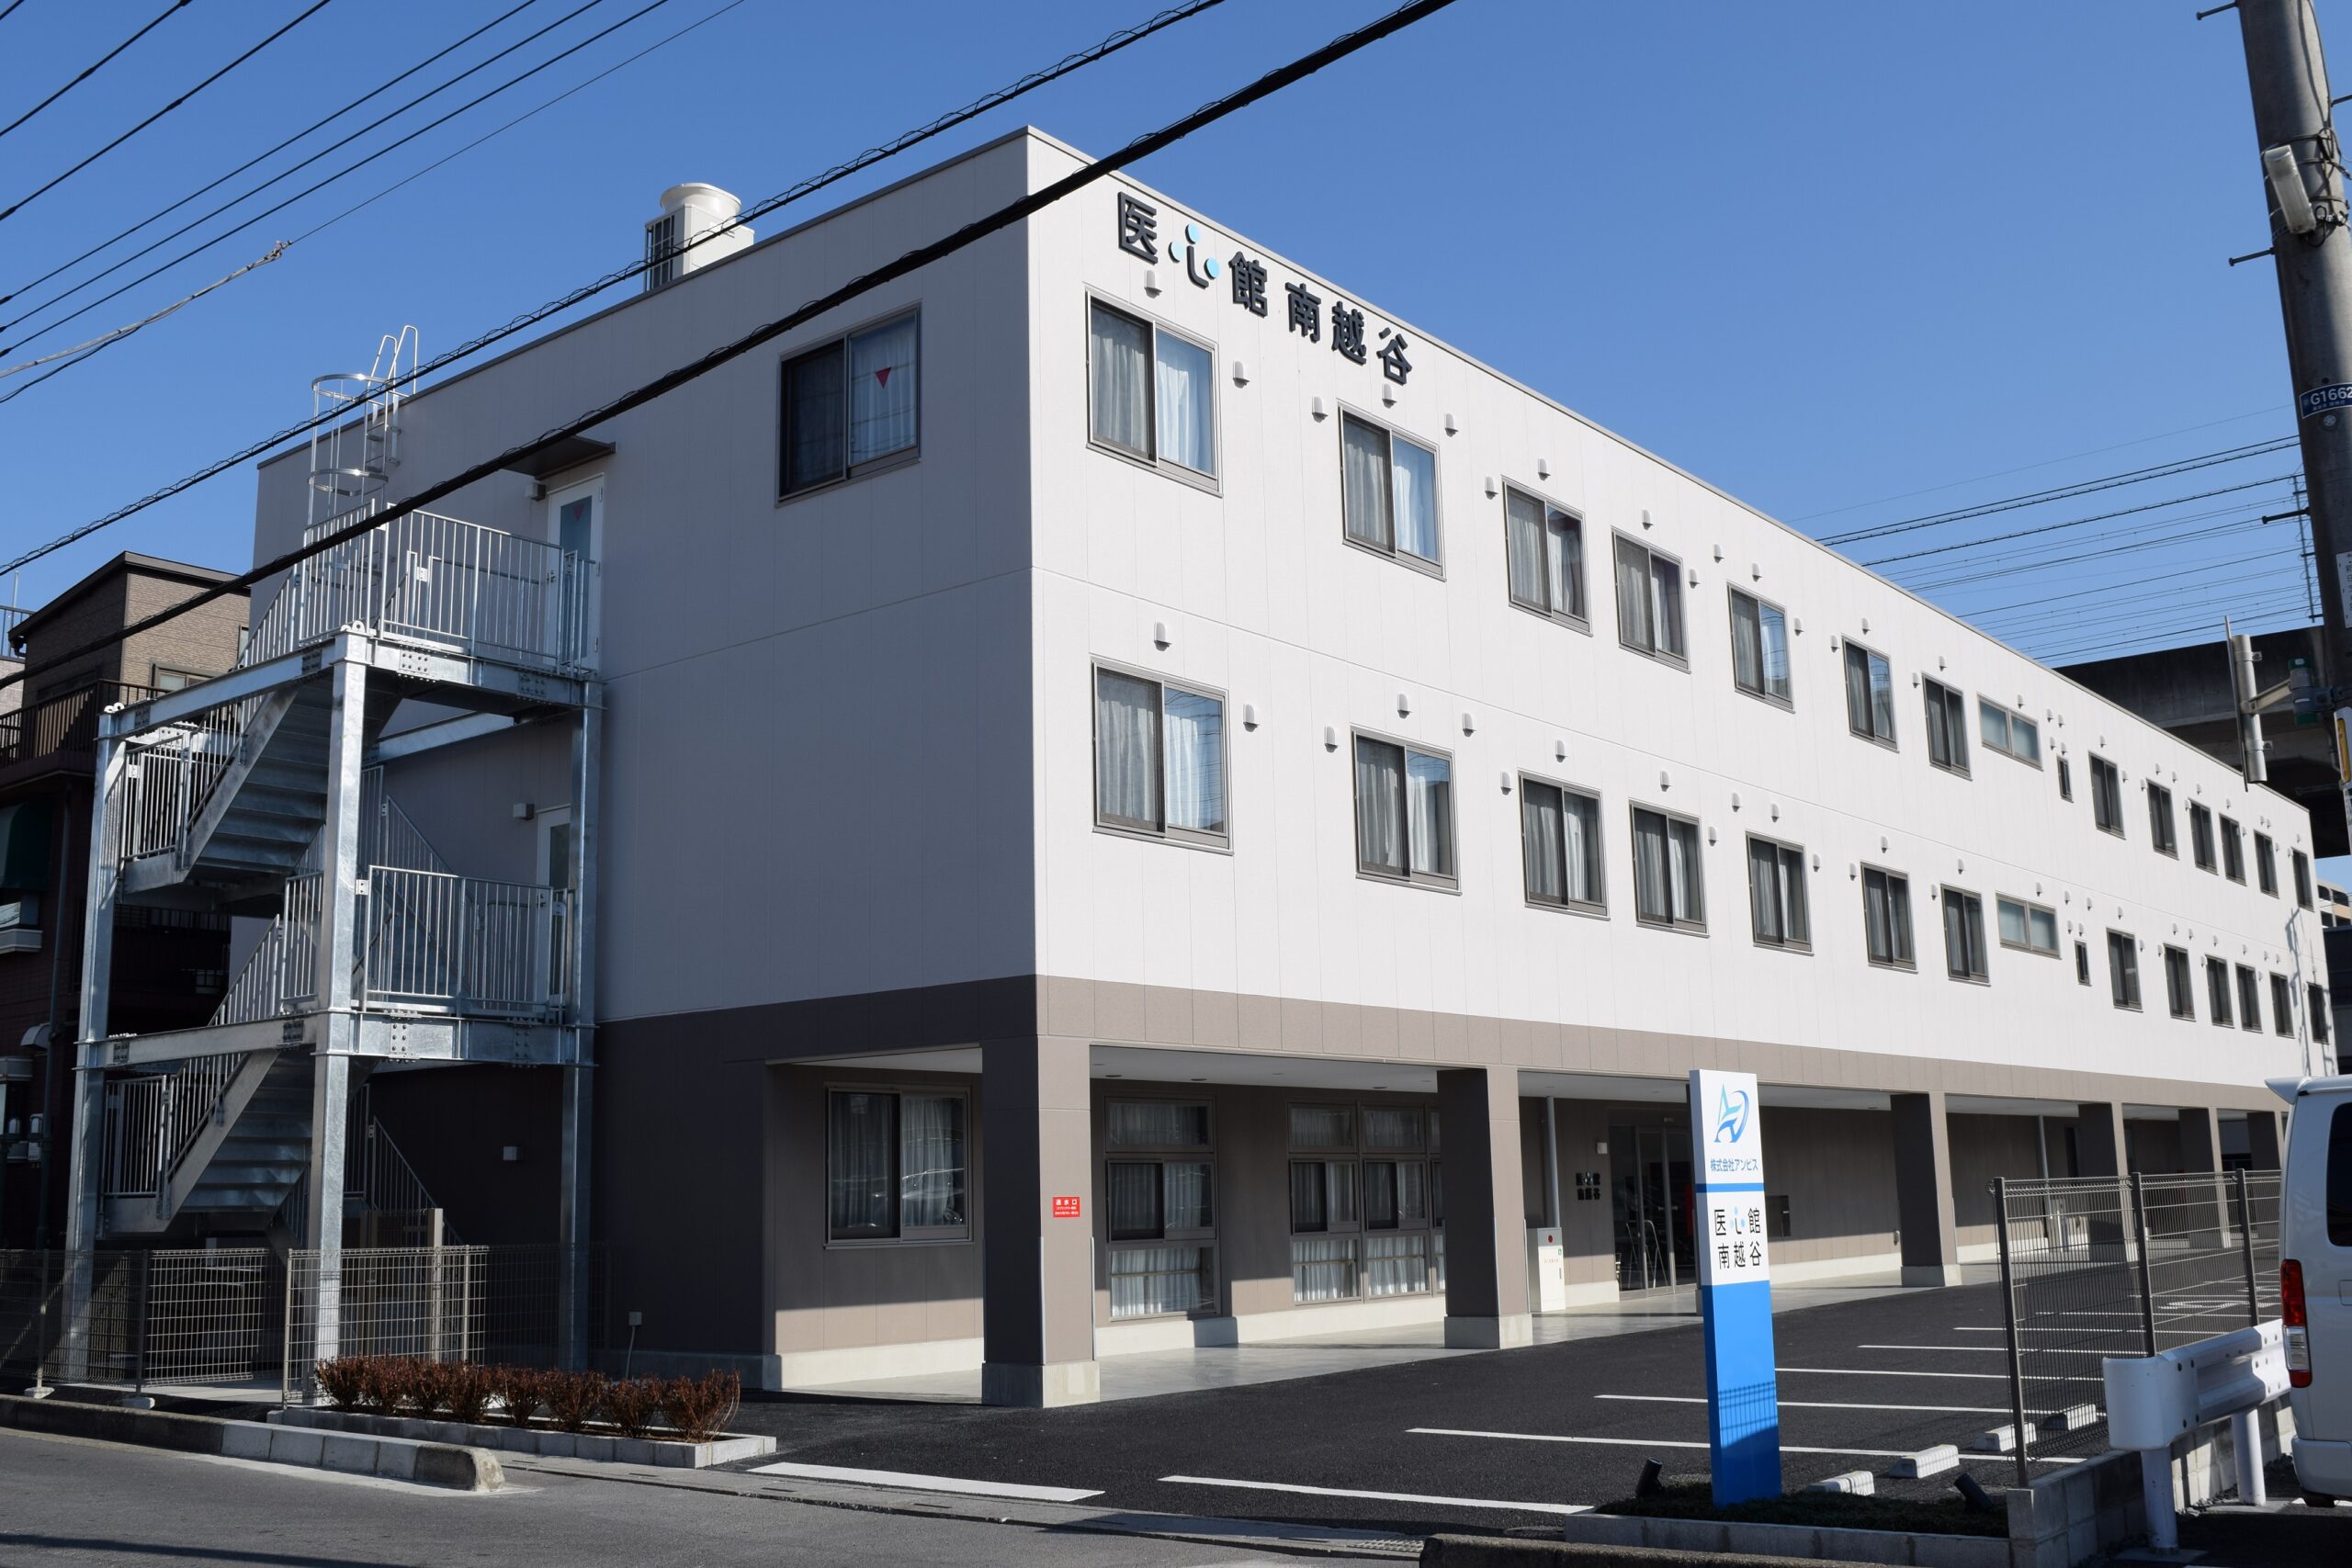 埼玉県では12施設目となる 有料老人ホーム「医心館 南越谷」をオープンしました